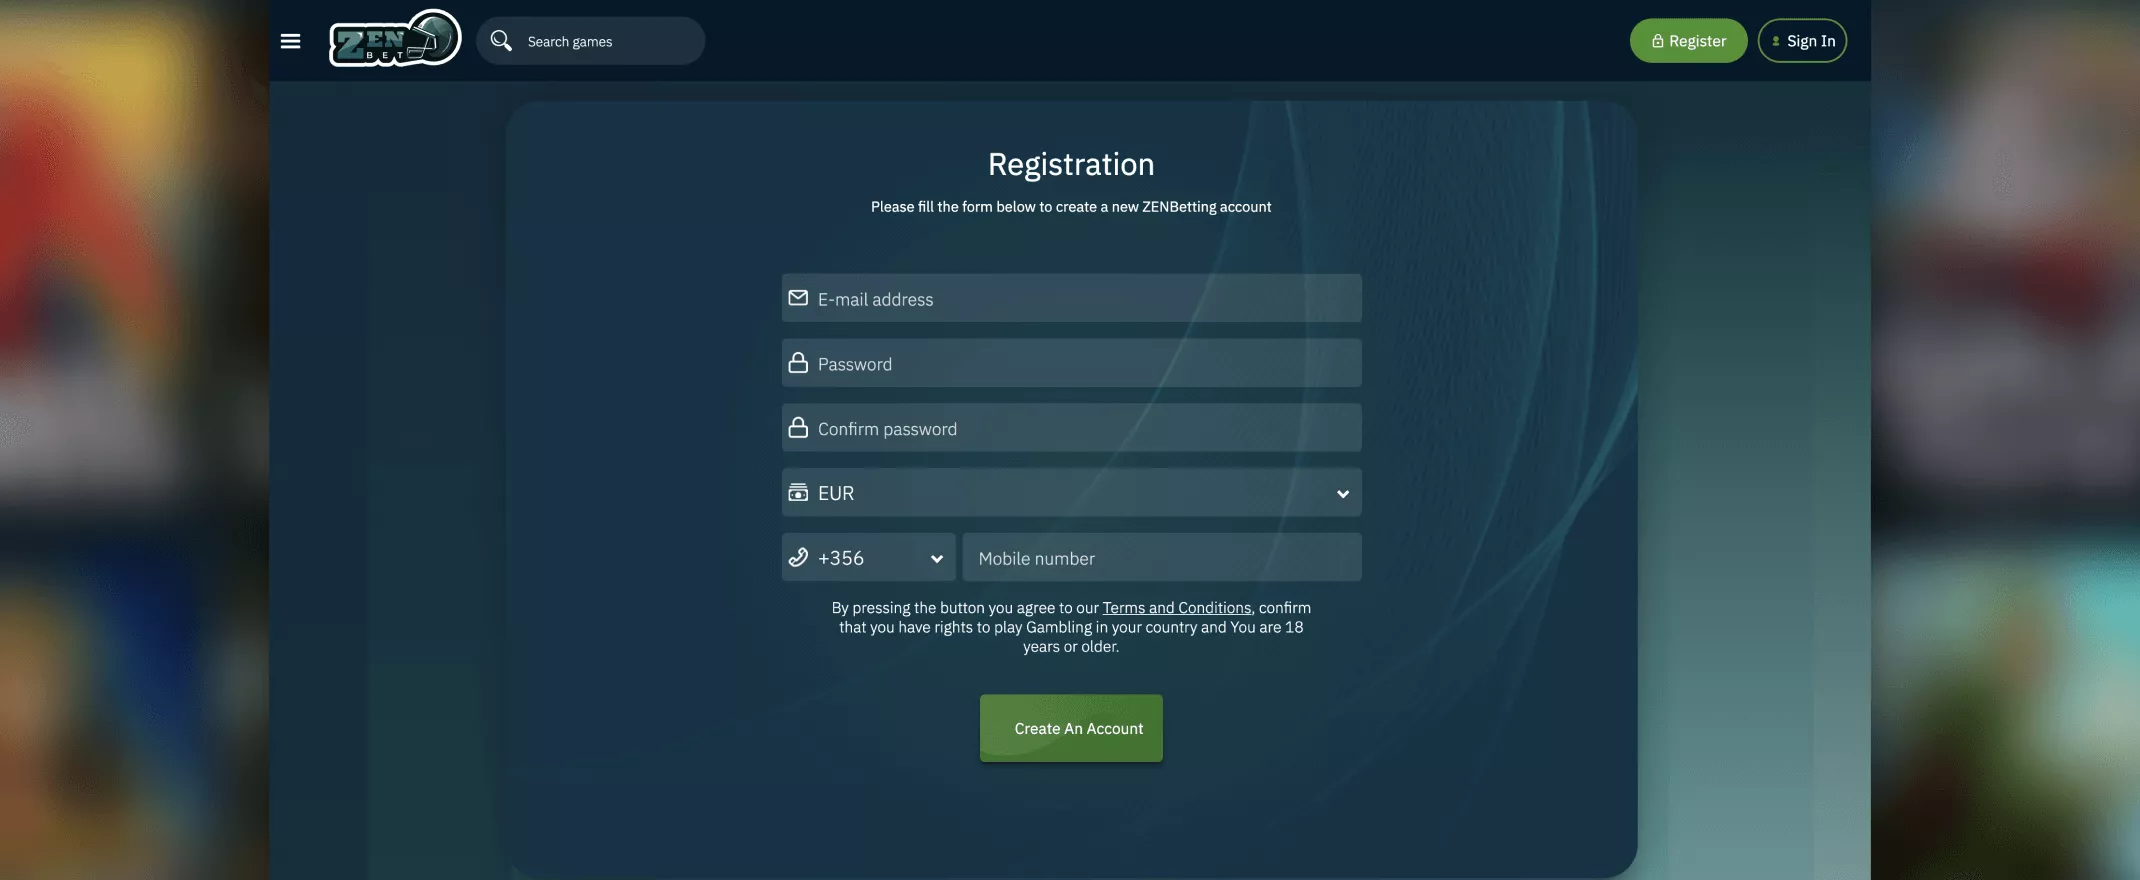 Zenbetting registration screenshot